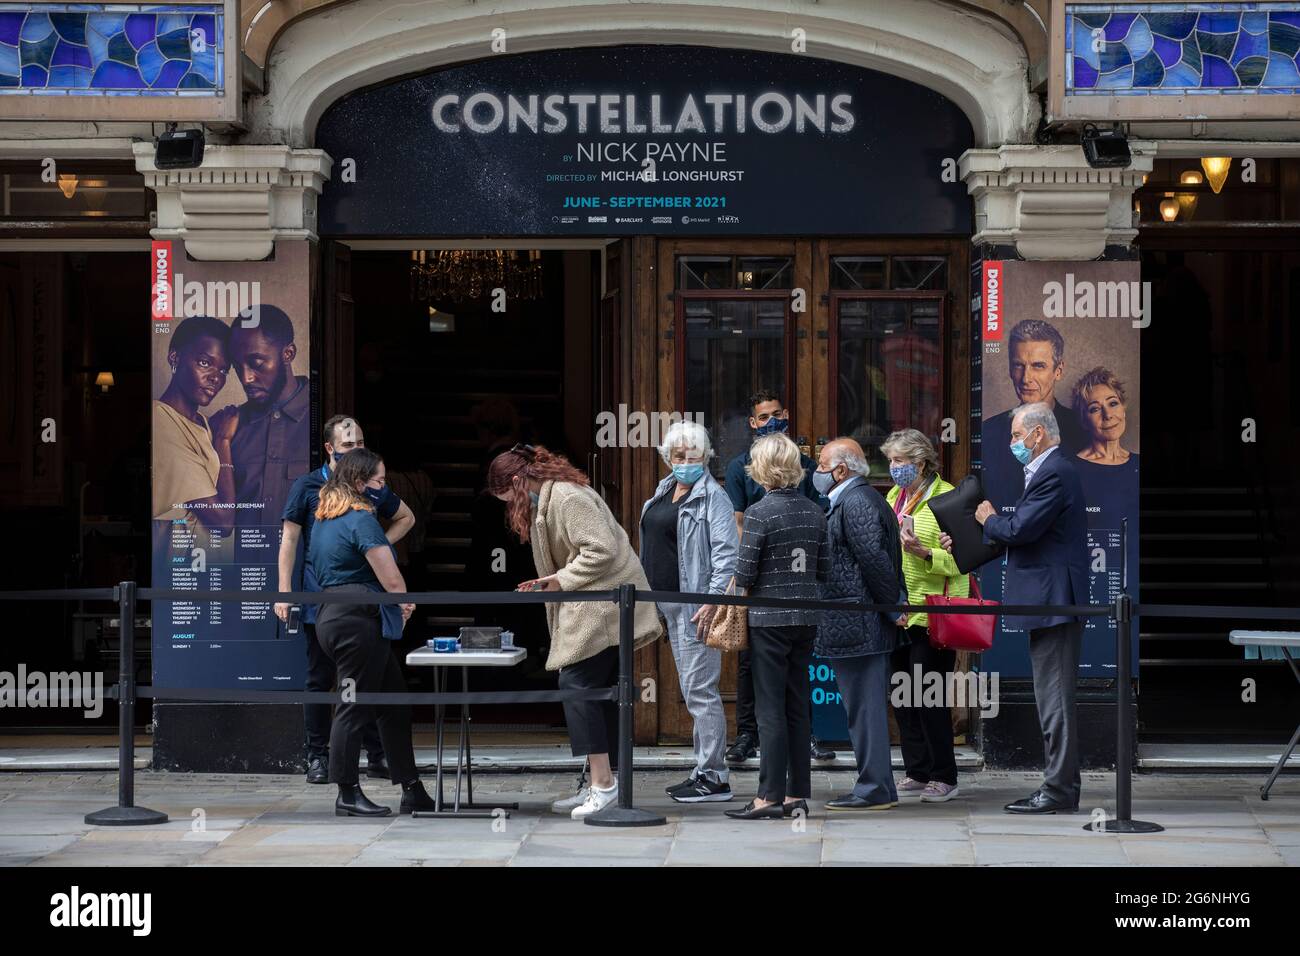 Eine Schlange von Menschen, die das Theater Vaudeville besuchen, während der Veranstaltungsort nach der Coronavirus-Sperre wieder für Aufführungen öffnet, Strand, London, England, Großbritannien Stockfoto